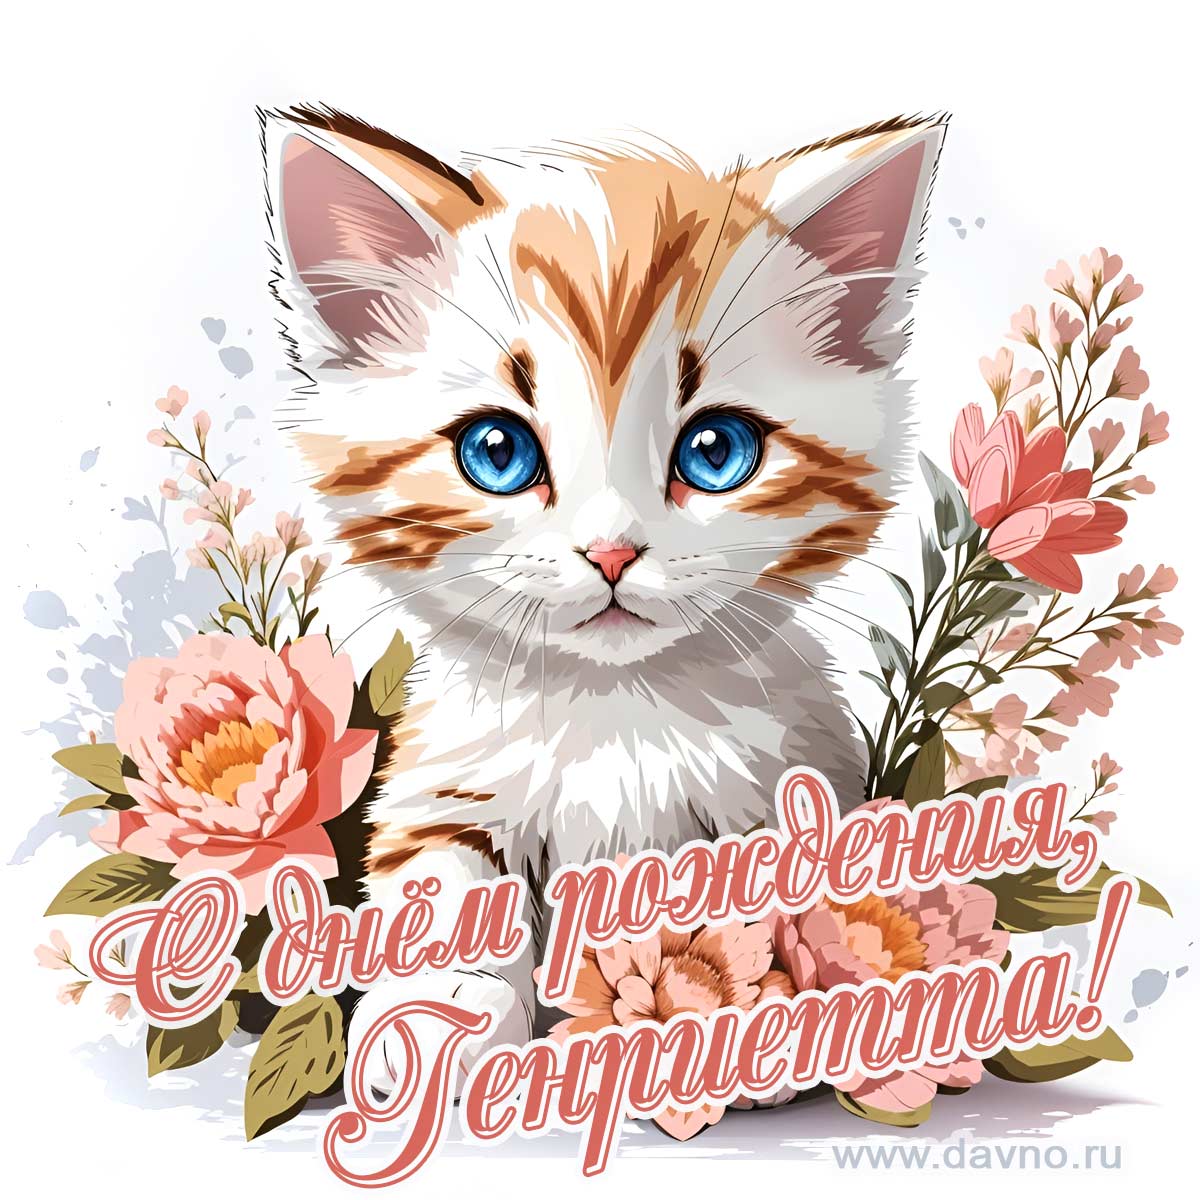 Новая рисованная поздравительная открытка для Генриетты с котёнком